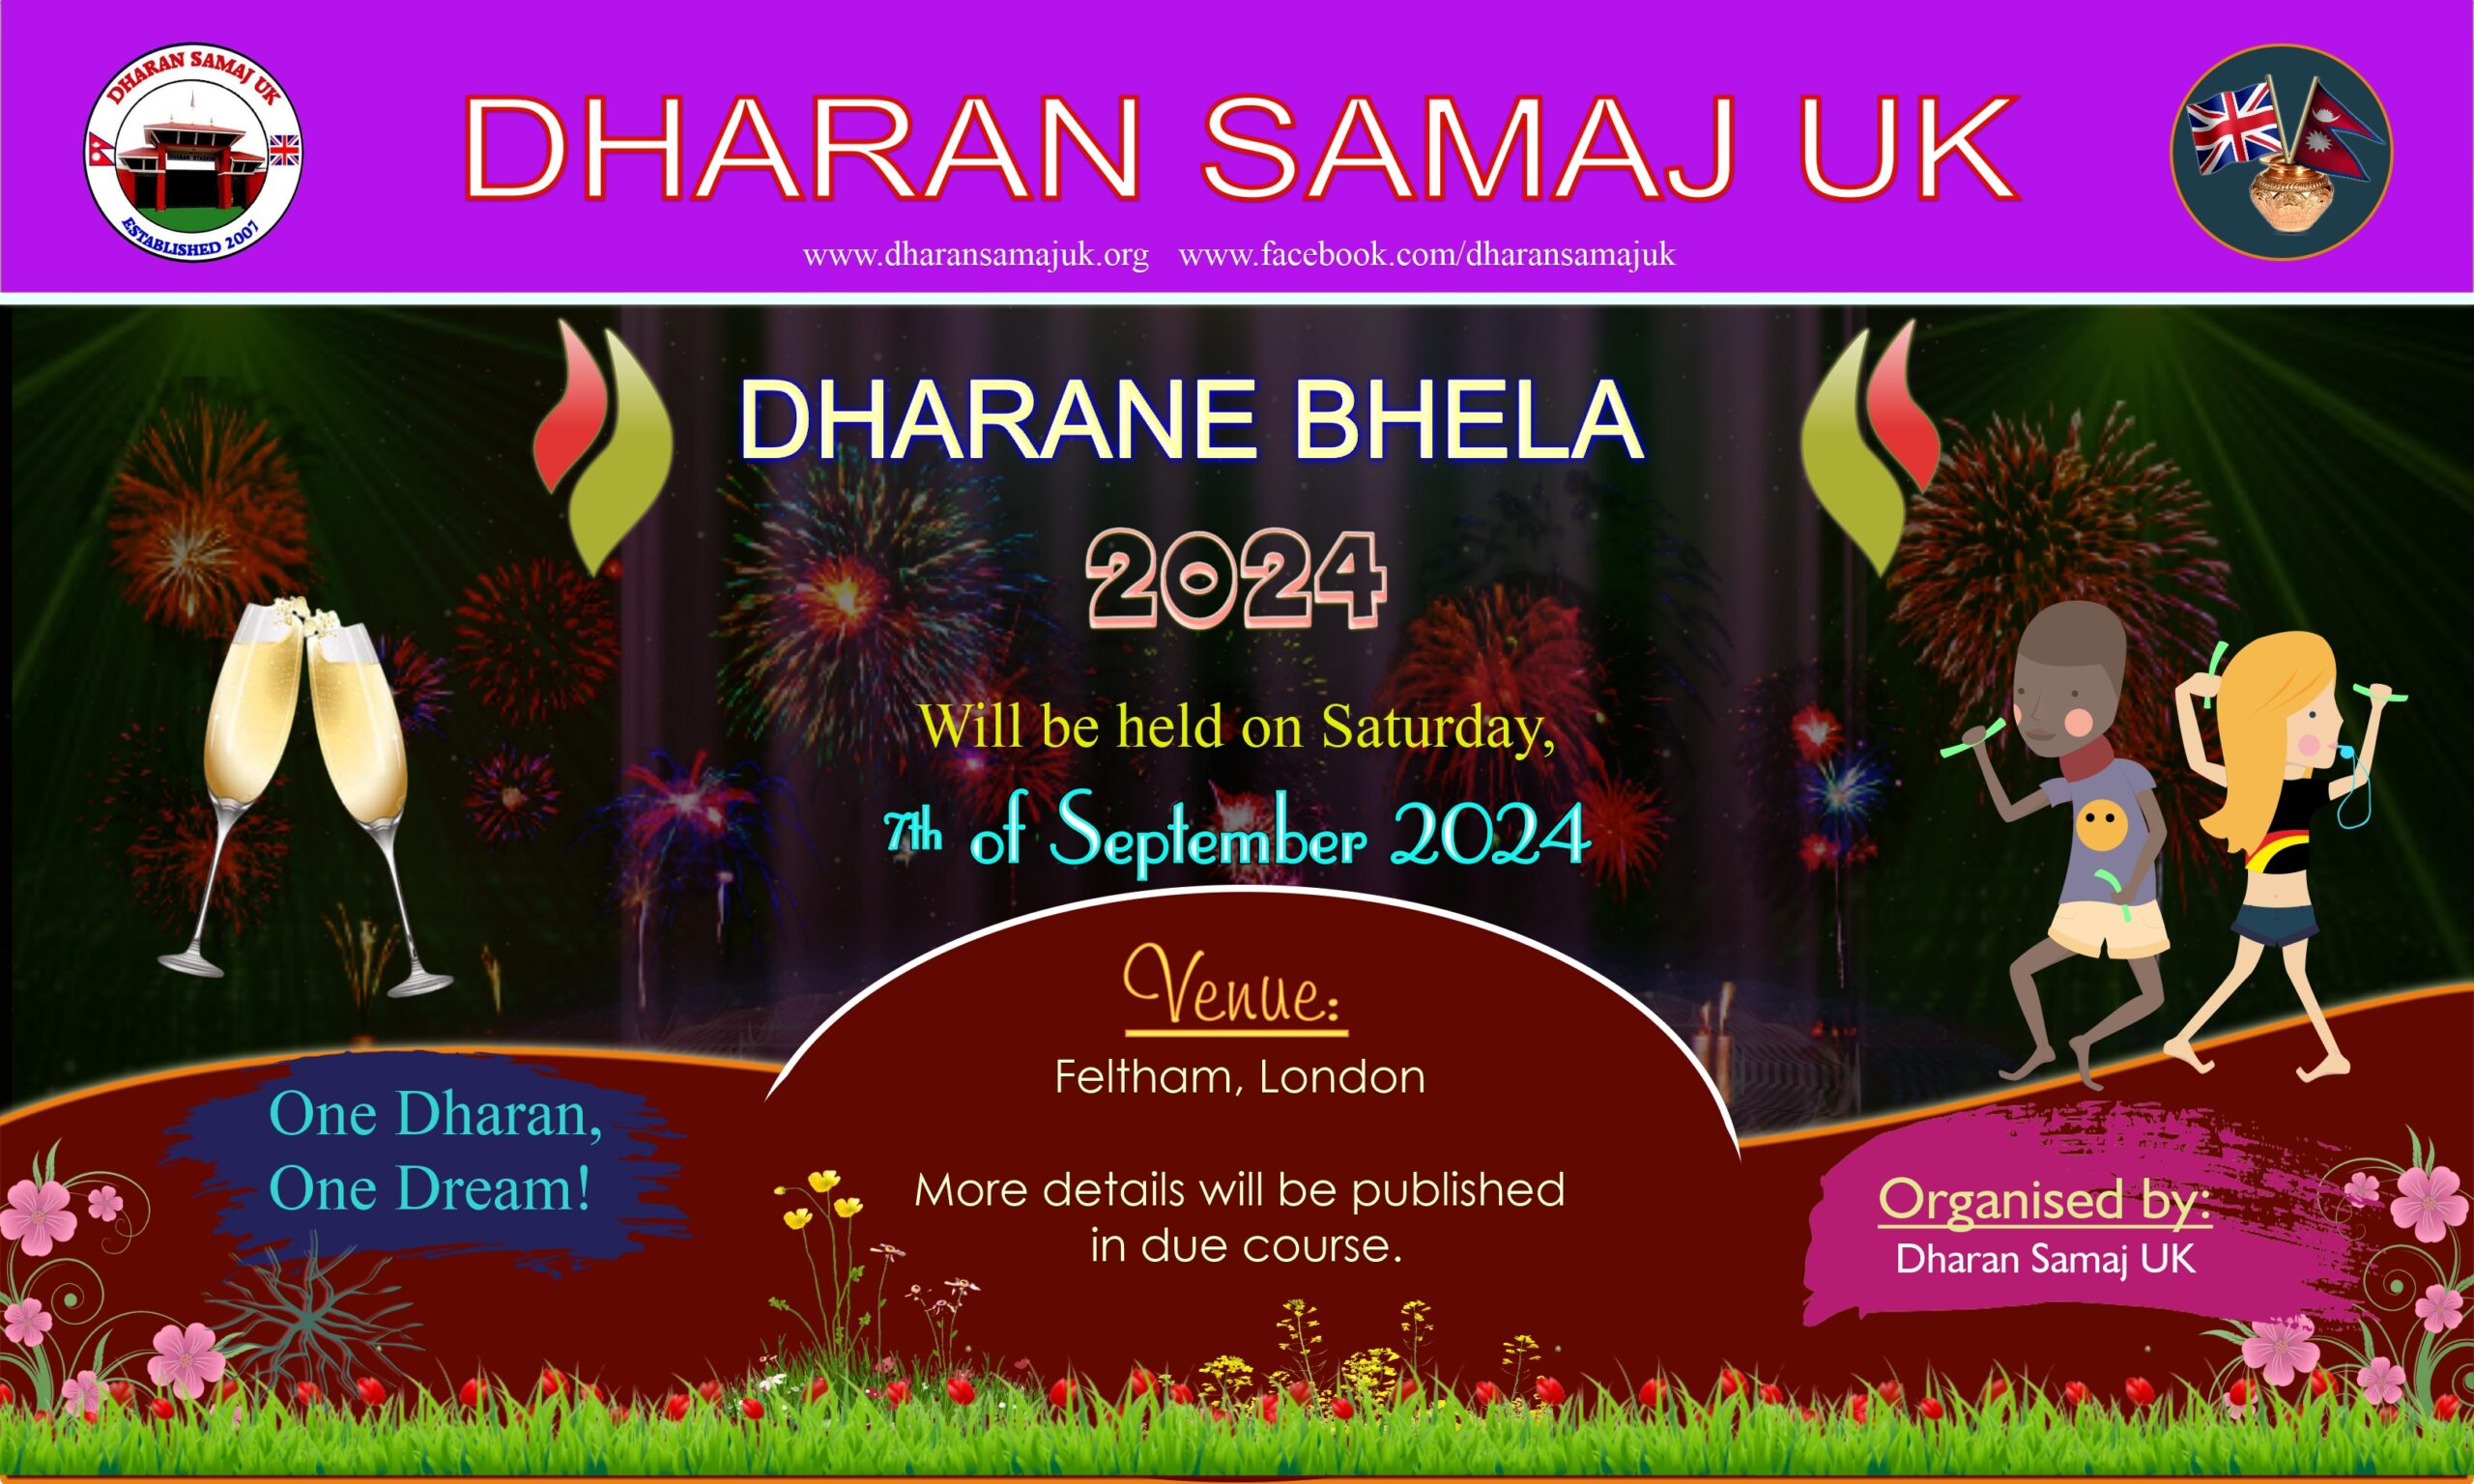 Dharane bhela 2024